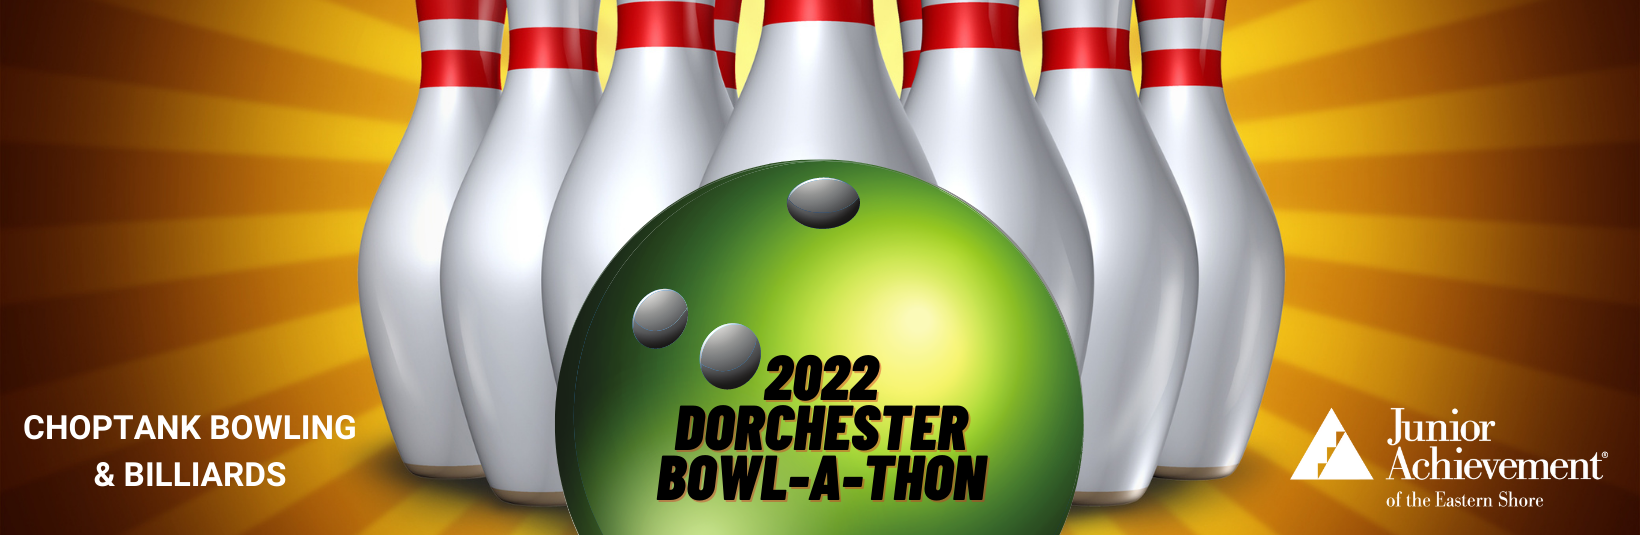 2022 Dorchester Bowl-A-Thon 